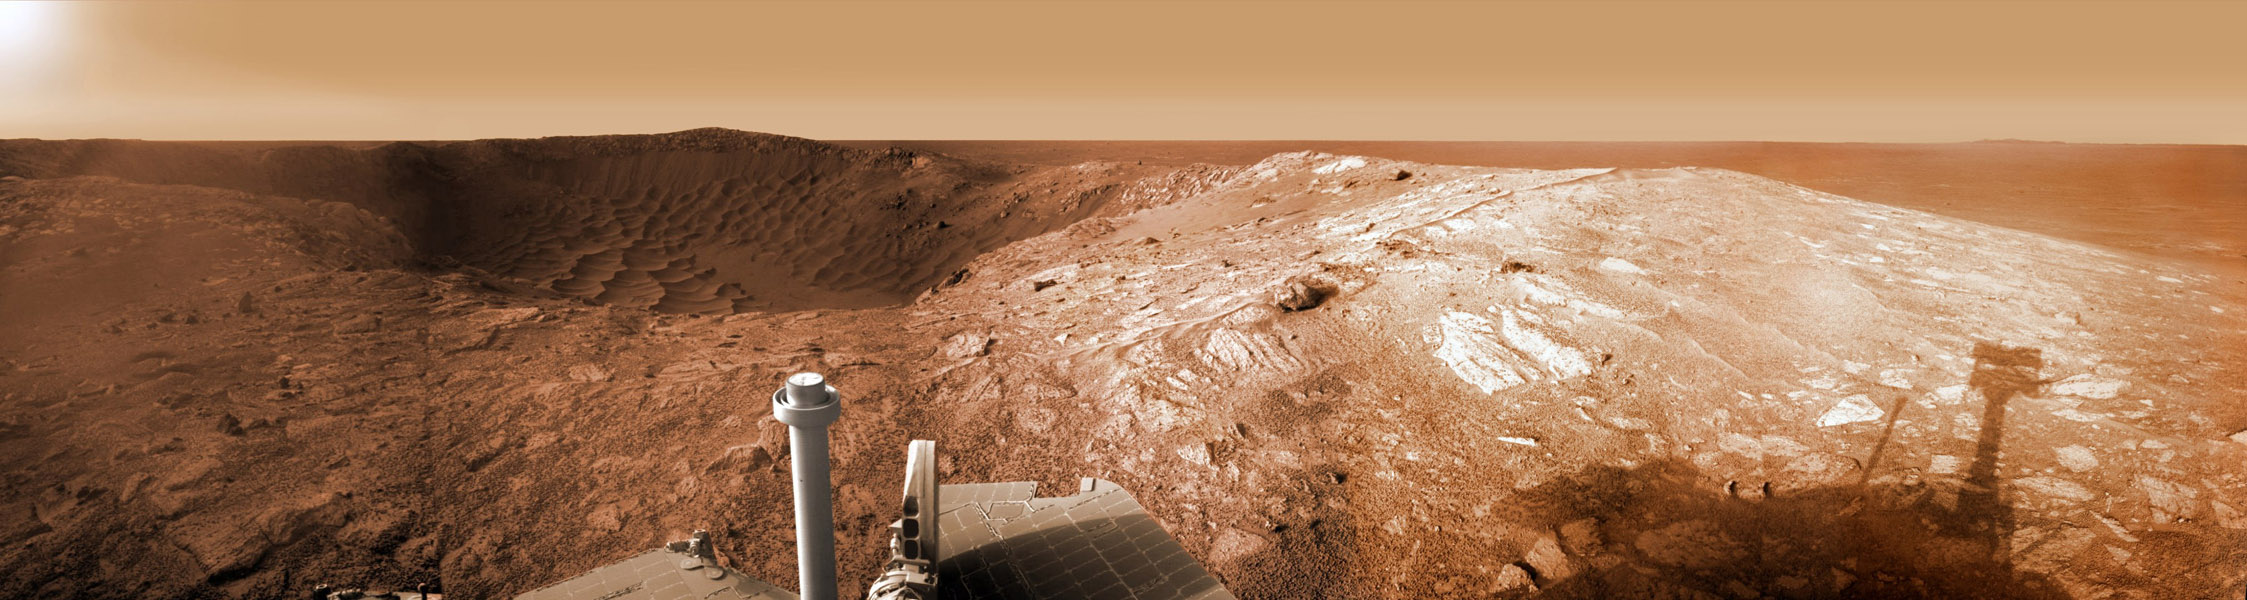 Panorama der Marsoberfläche, in der Mitte ragen unten Teile des Rovers auf, links am Horizont ist eine dunkle Stelle, rechts ein Hügel mit hellen Steinen.